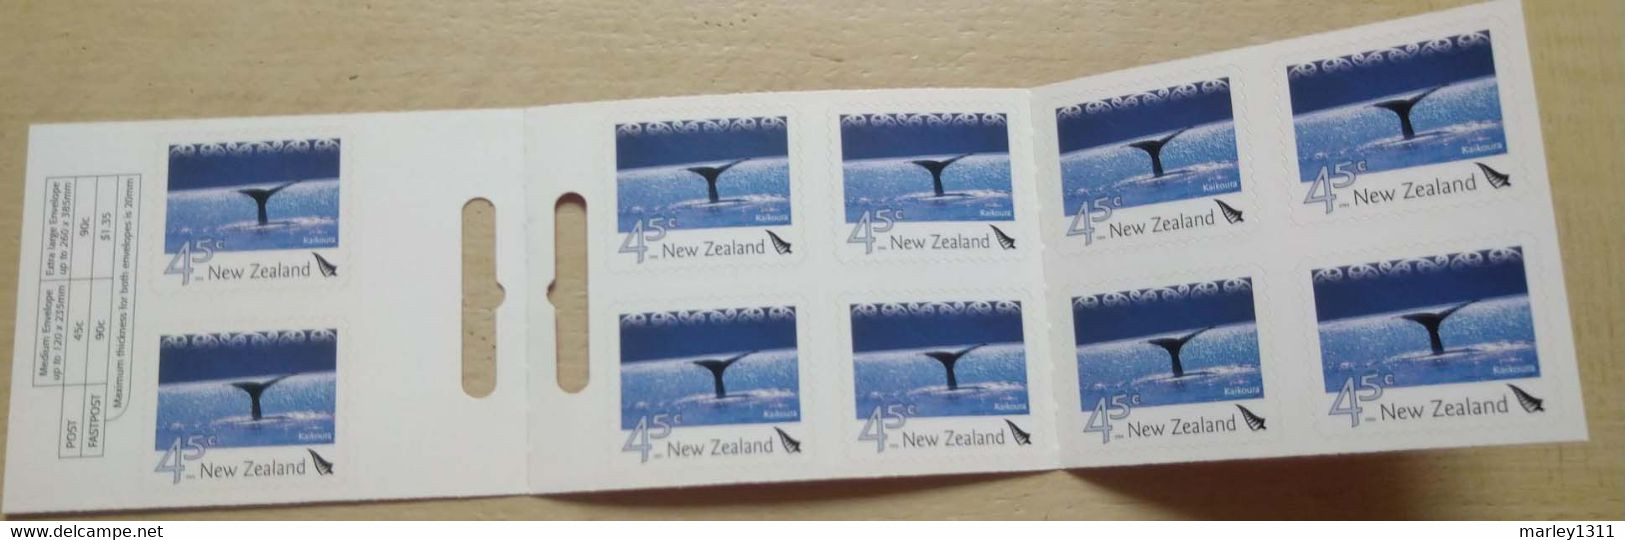 NOUVELLE - ZÉLANDE (2004) Stamps Booklet N°YT 2074 Paysages - Carnets